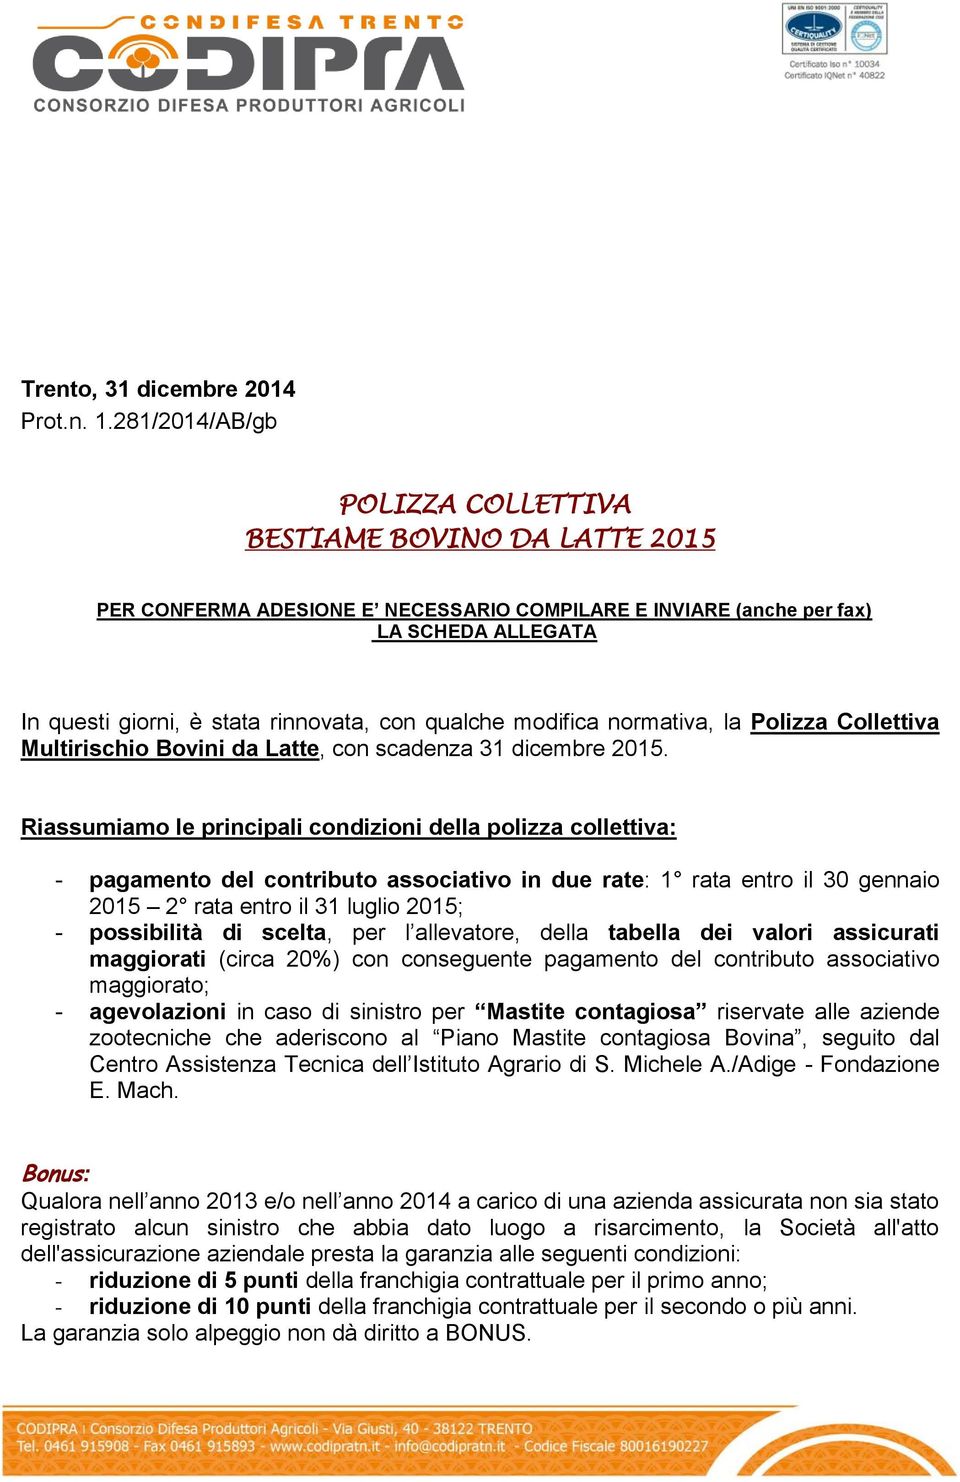 qualche modifica normativa, la Polizza Collettiva Multirischio Bovini da Latte, con scadenza 31 dicembre 2015.